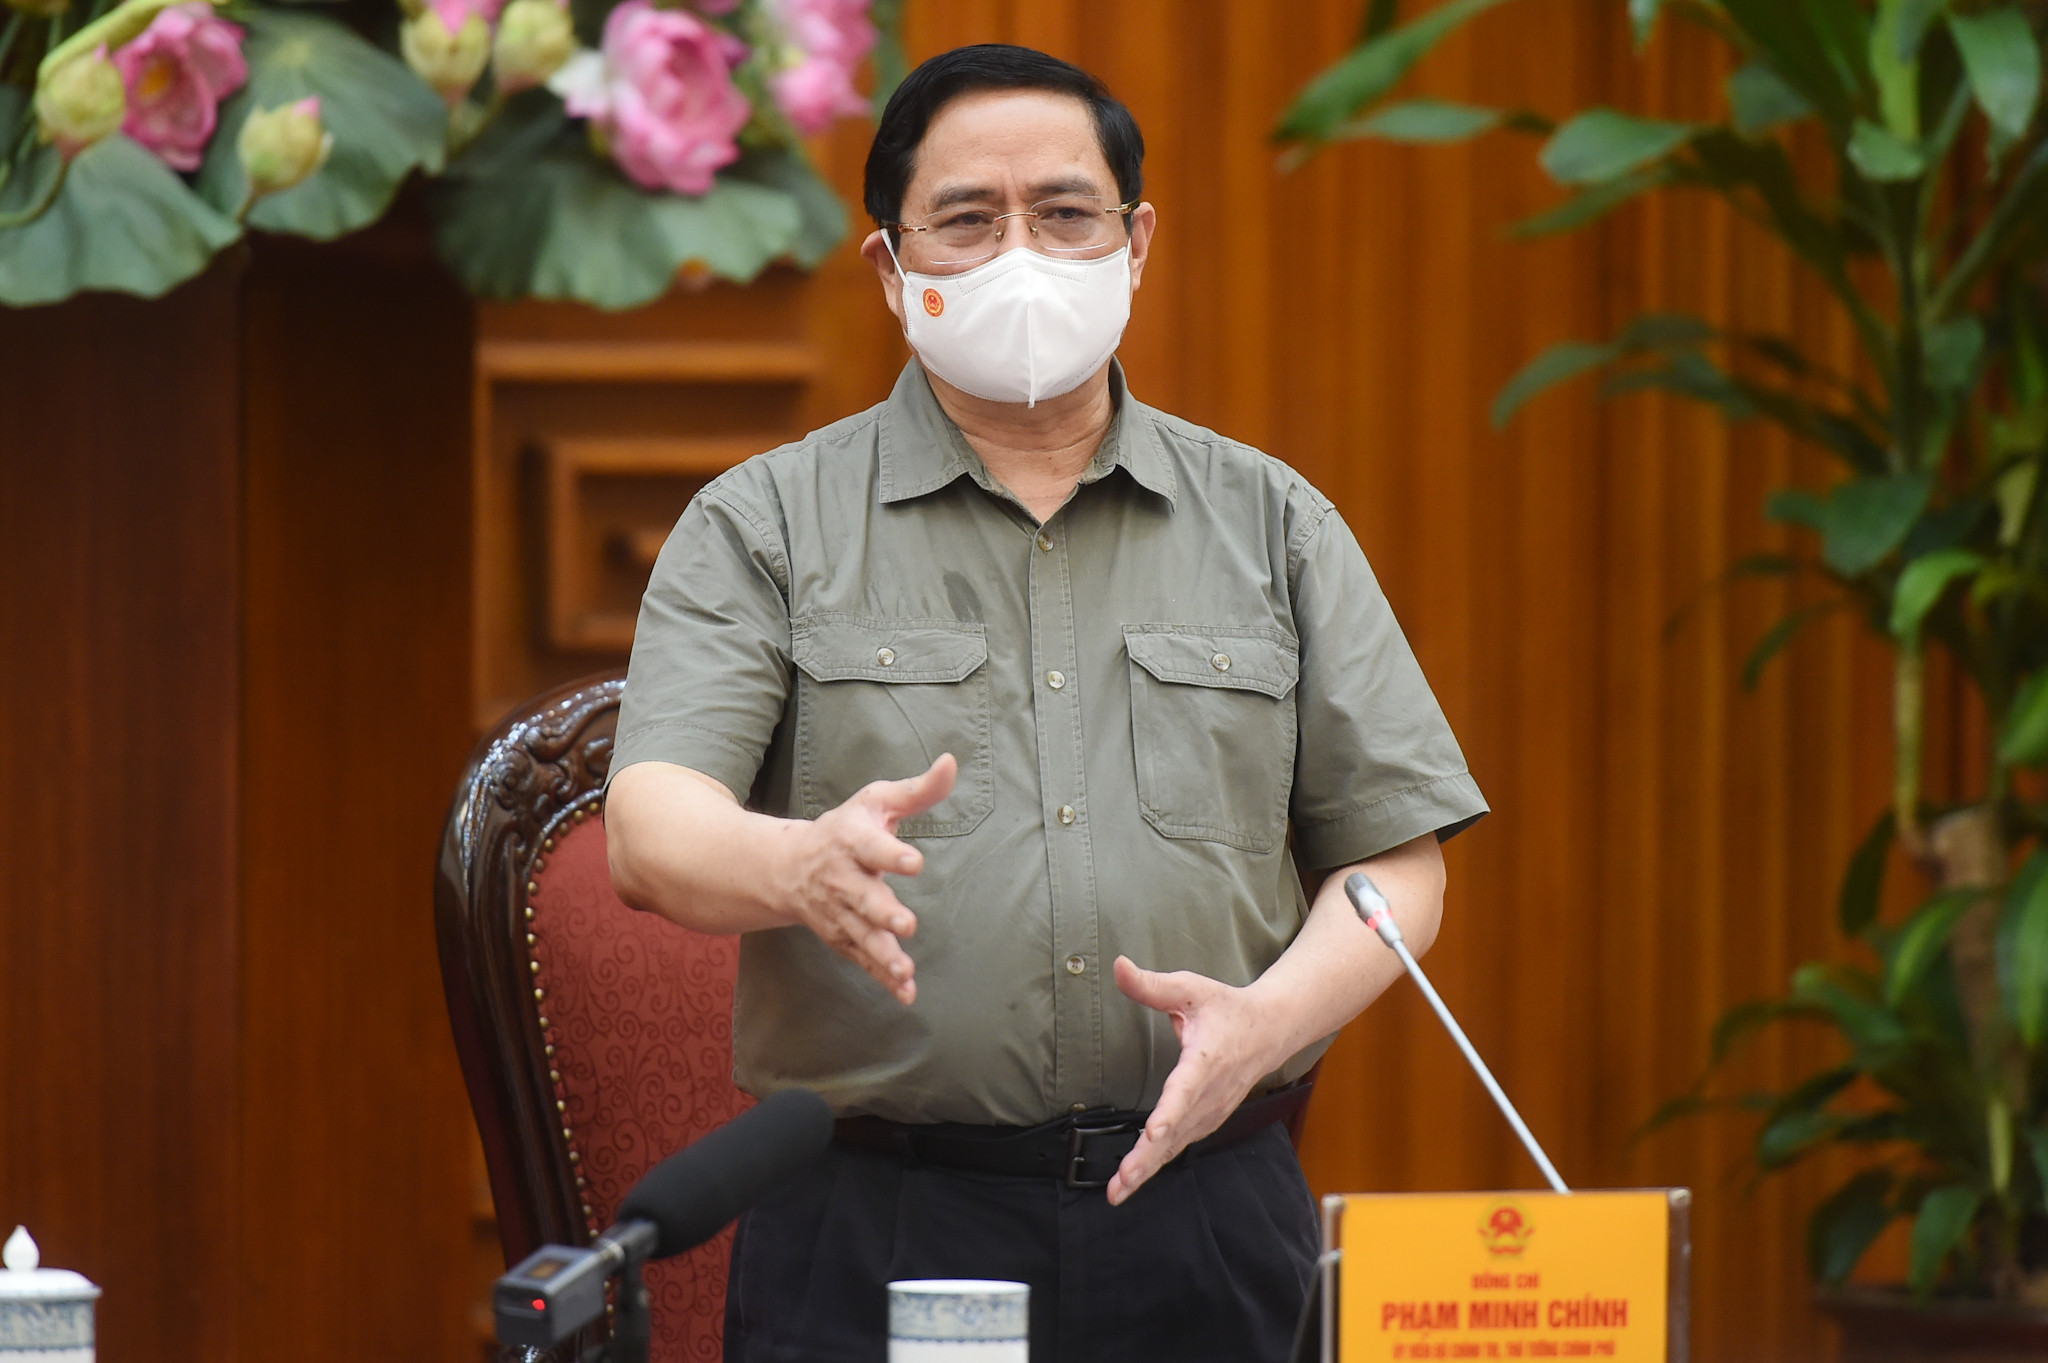 Thủ tướng Phạm Minh Chính nhắc nhở các địa phương chấn chỉnh công tác phòng chống dịch Covid-19 tại cuộc họp khẩn của Chính phủ ngày 2/5